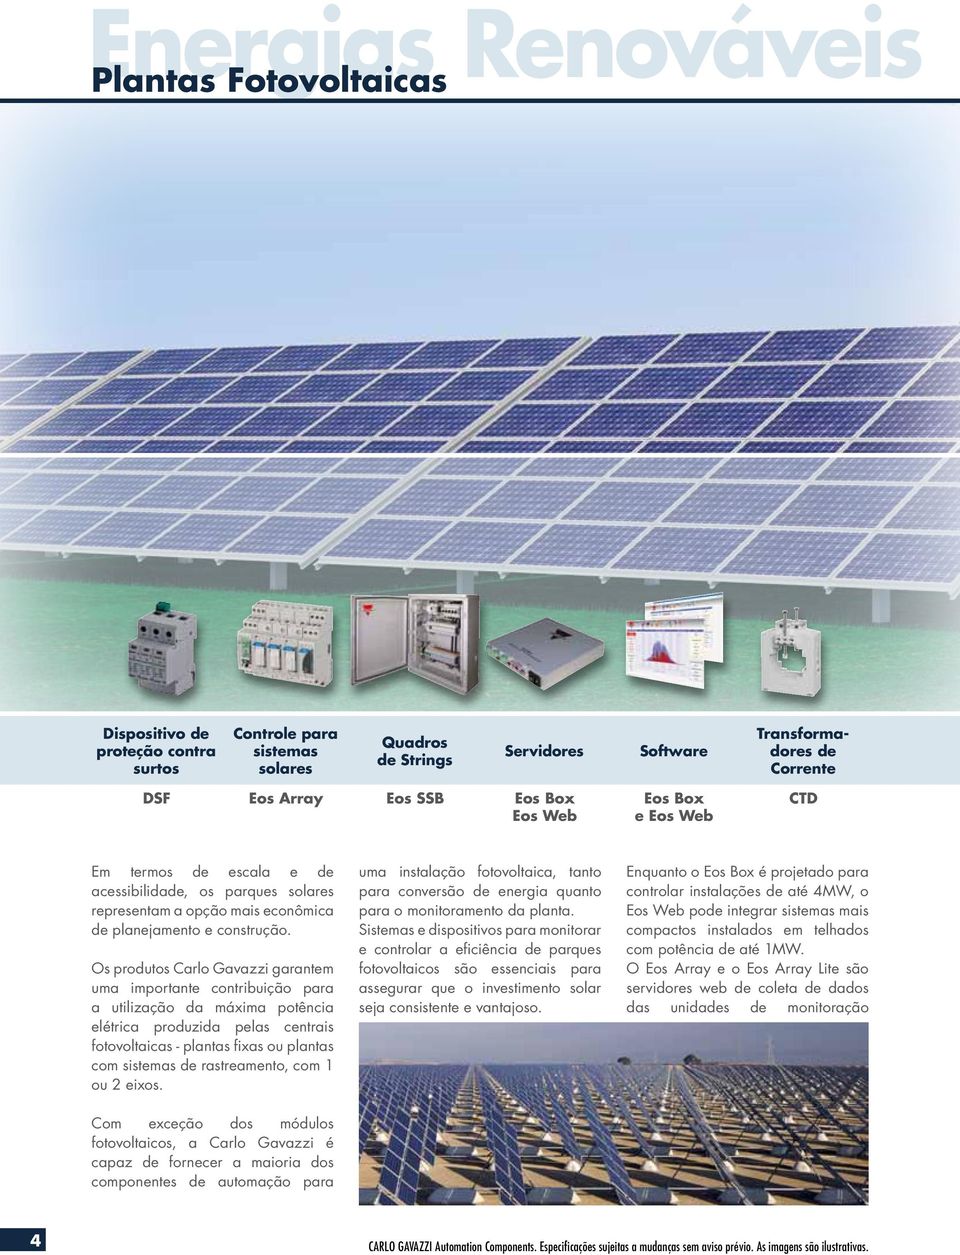 Os produtos Carlo Gavazzi garantem uma importante contribuição para a utilização da máxima potência elétrica produzida pelas centrais fotovoltaicas - plantas fixas ou plantas com sistemas de